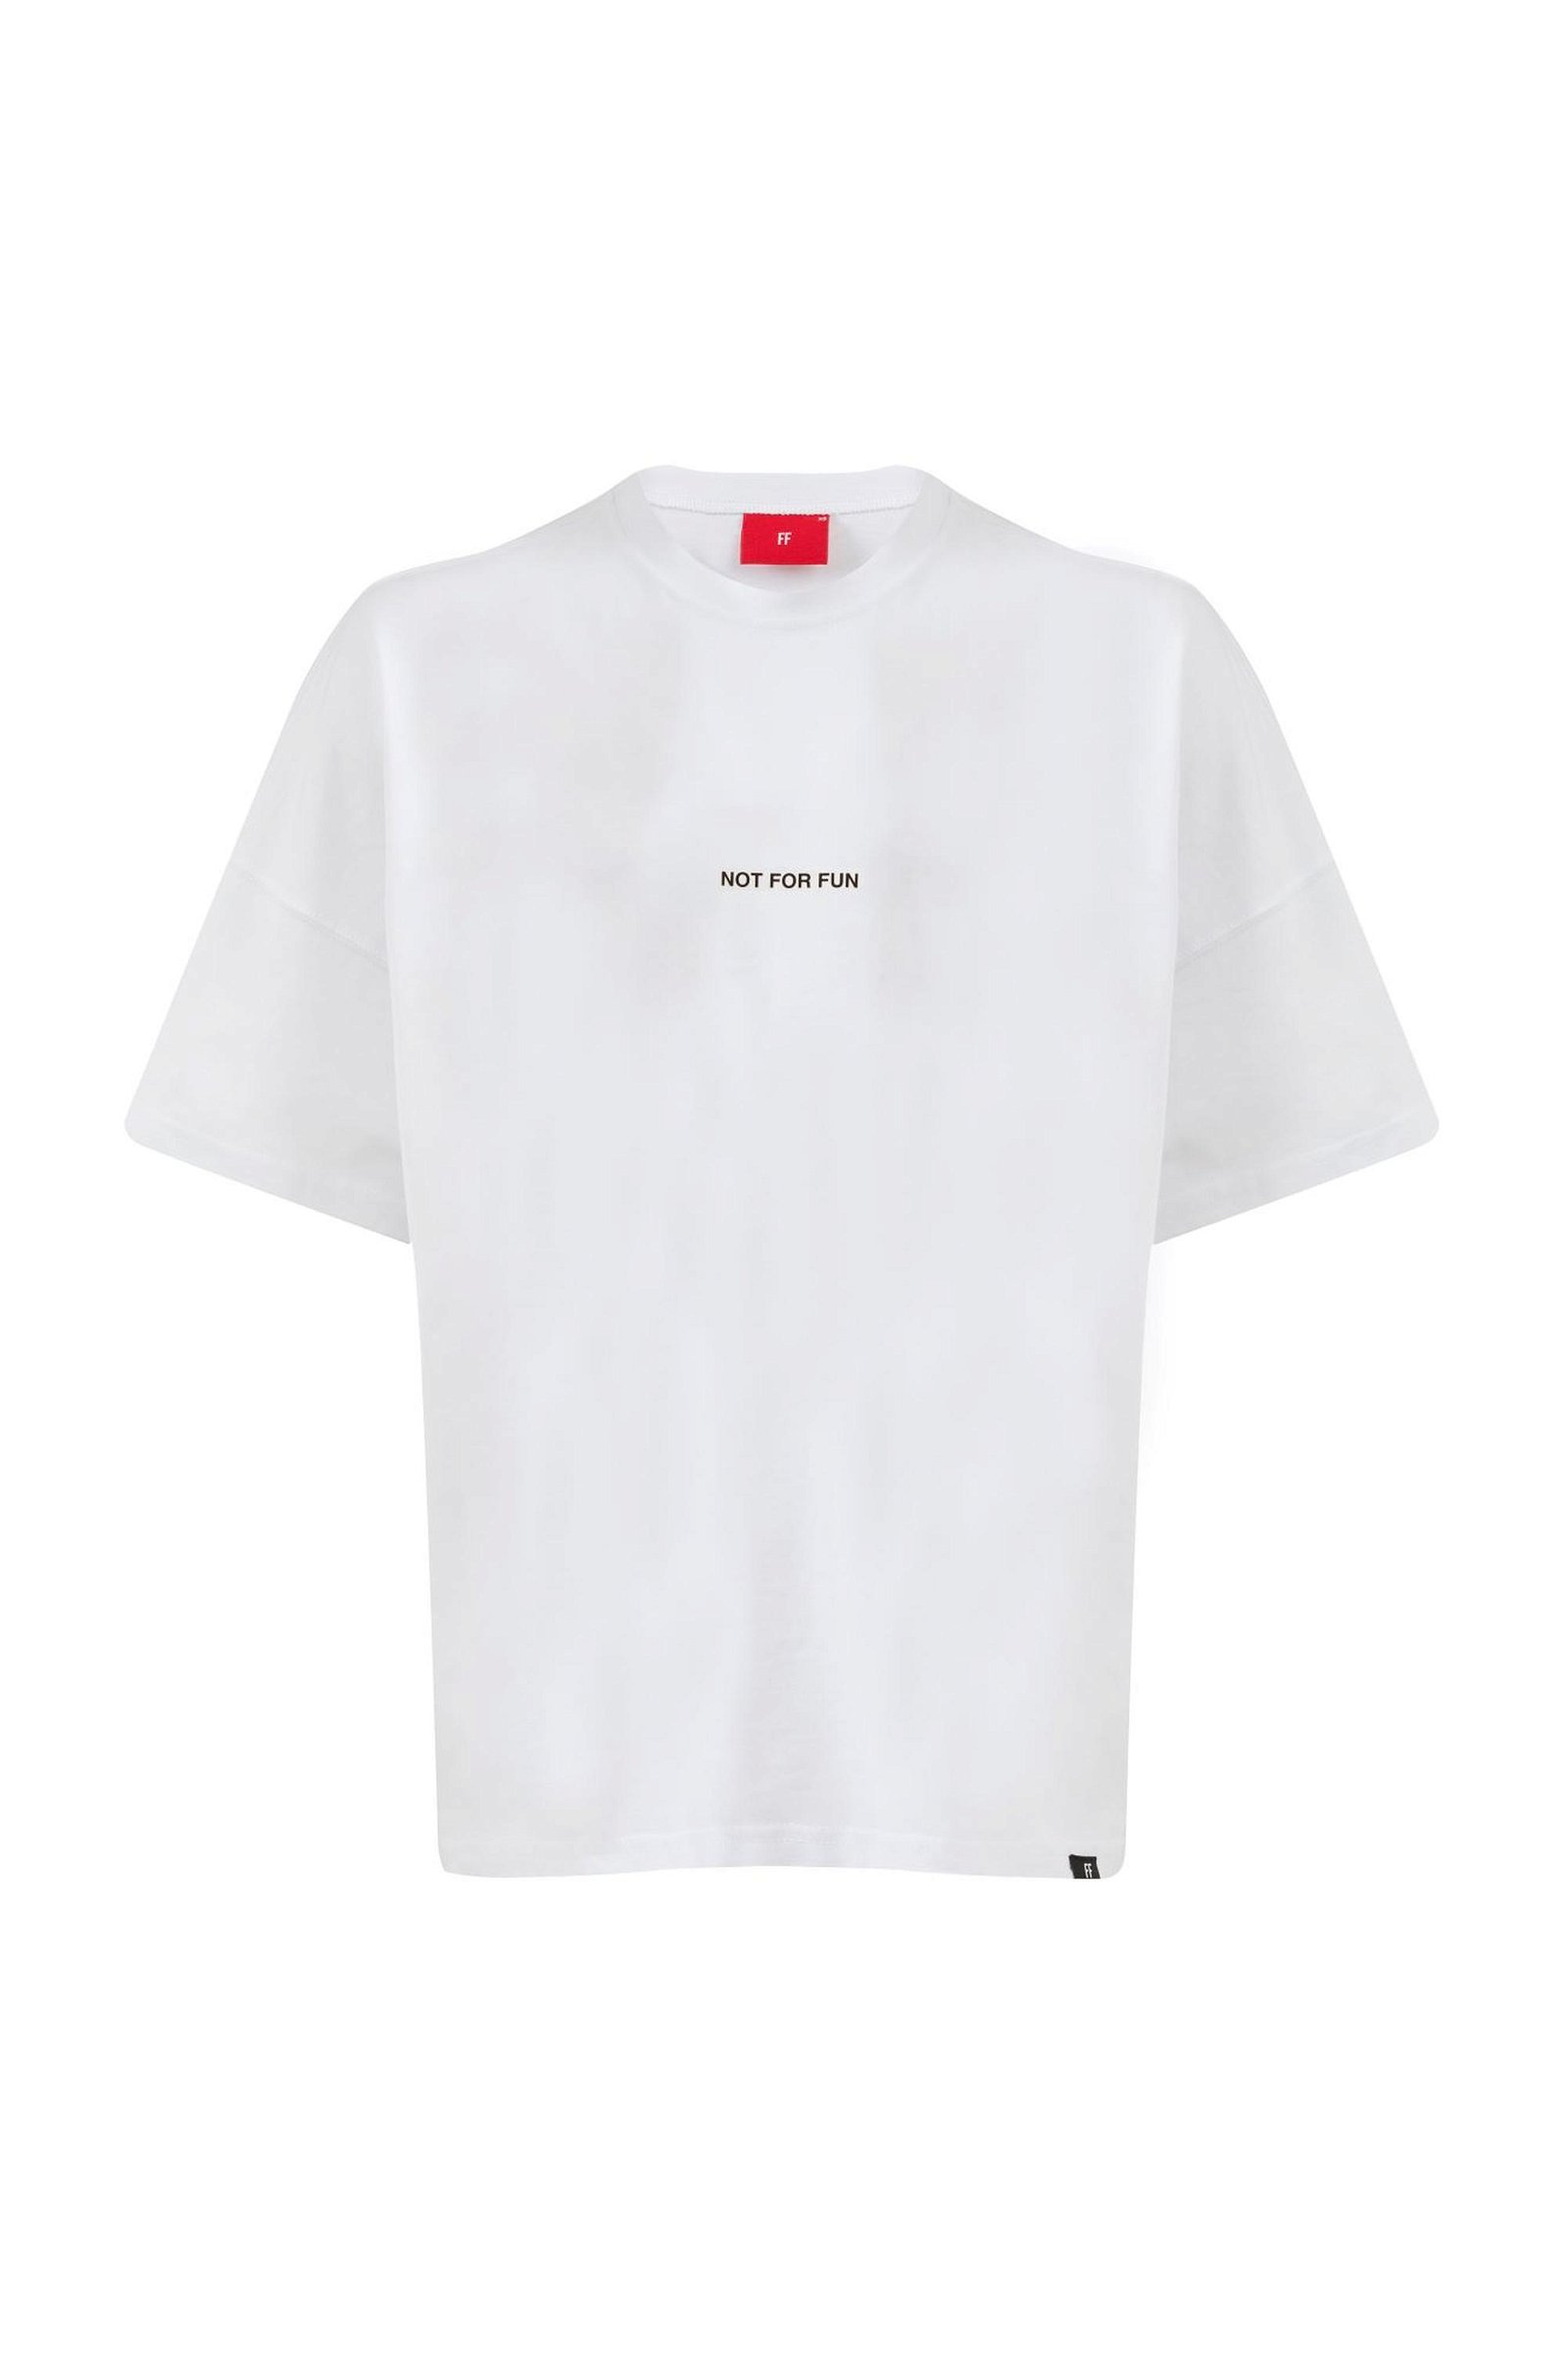 For Fun Not For Fun 004 Erkek Düşük Omuz Beyaz T-shirt